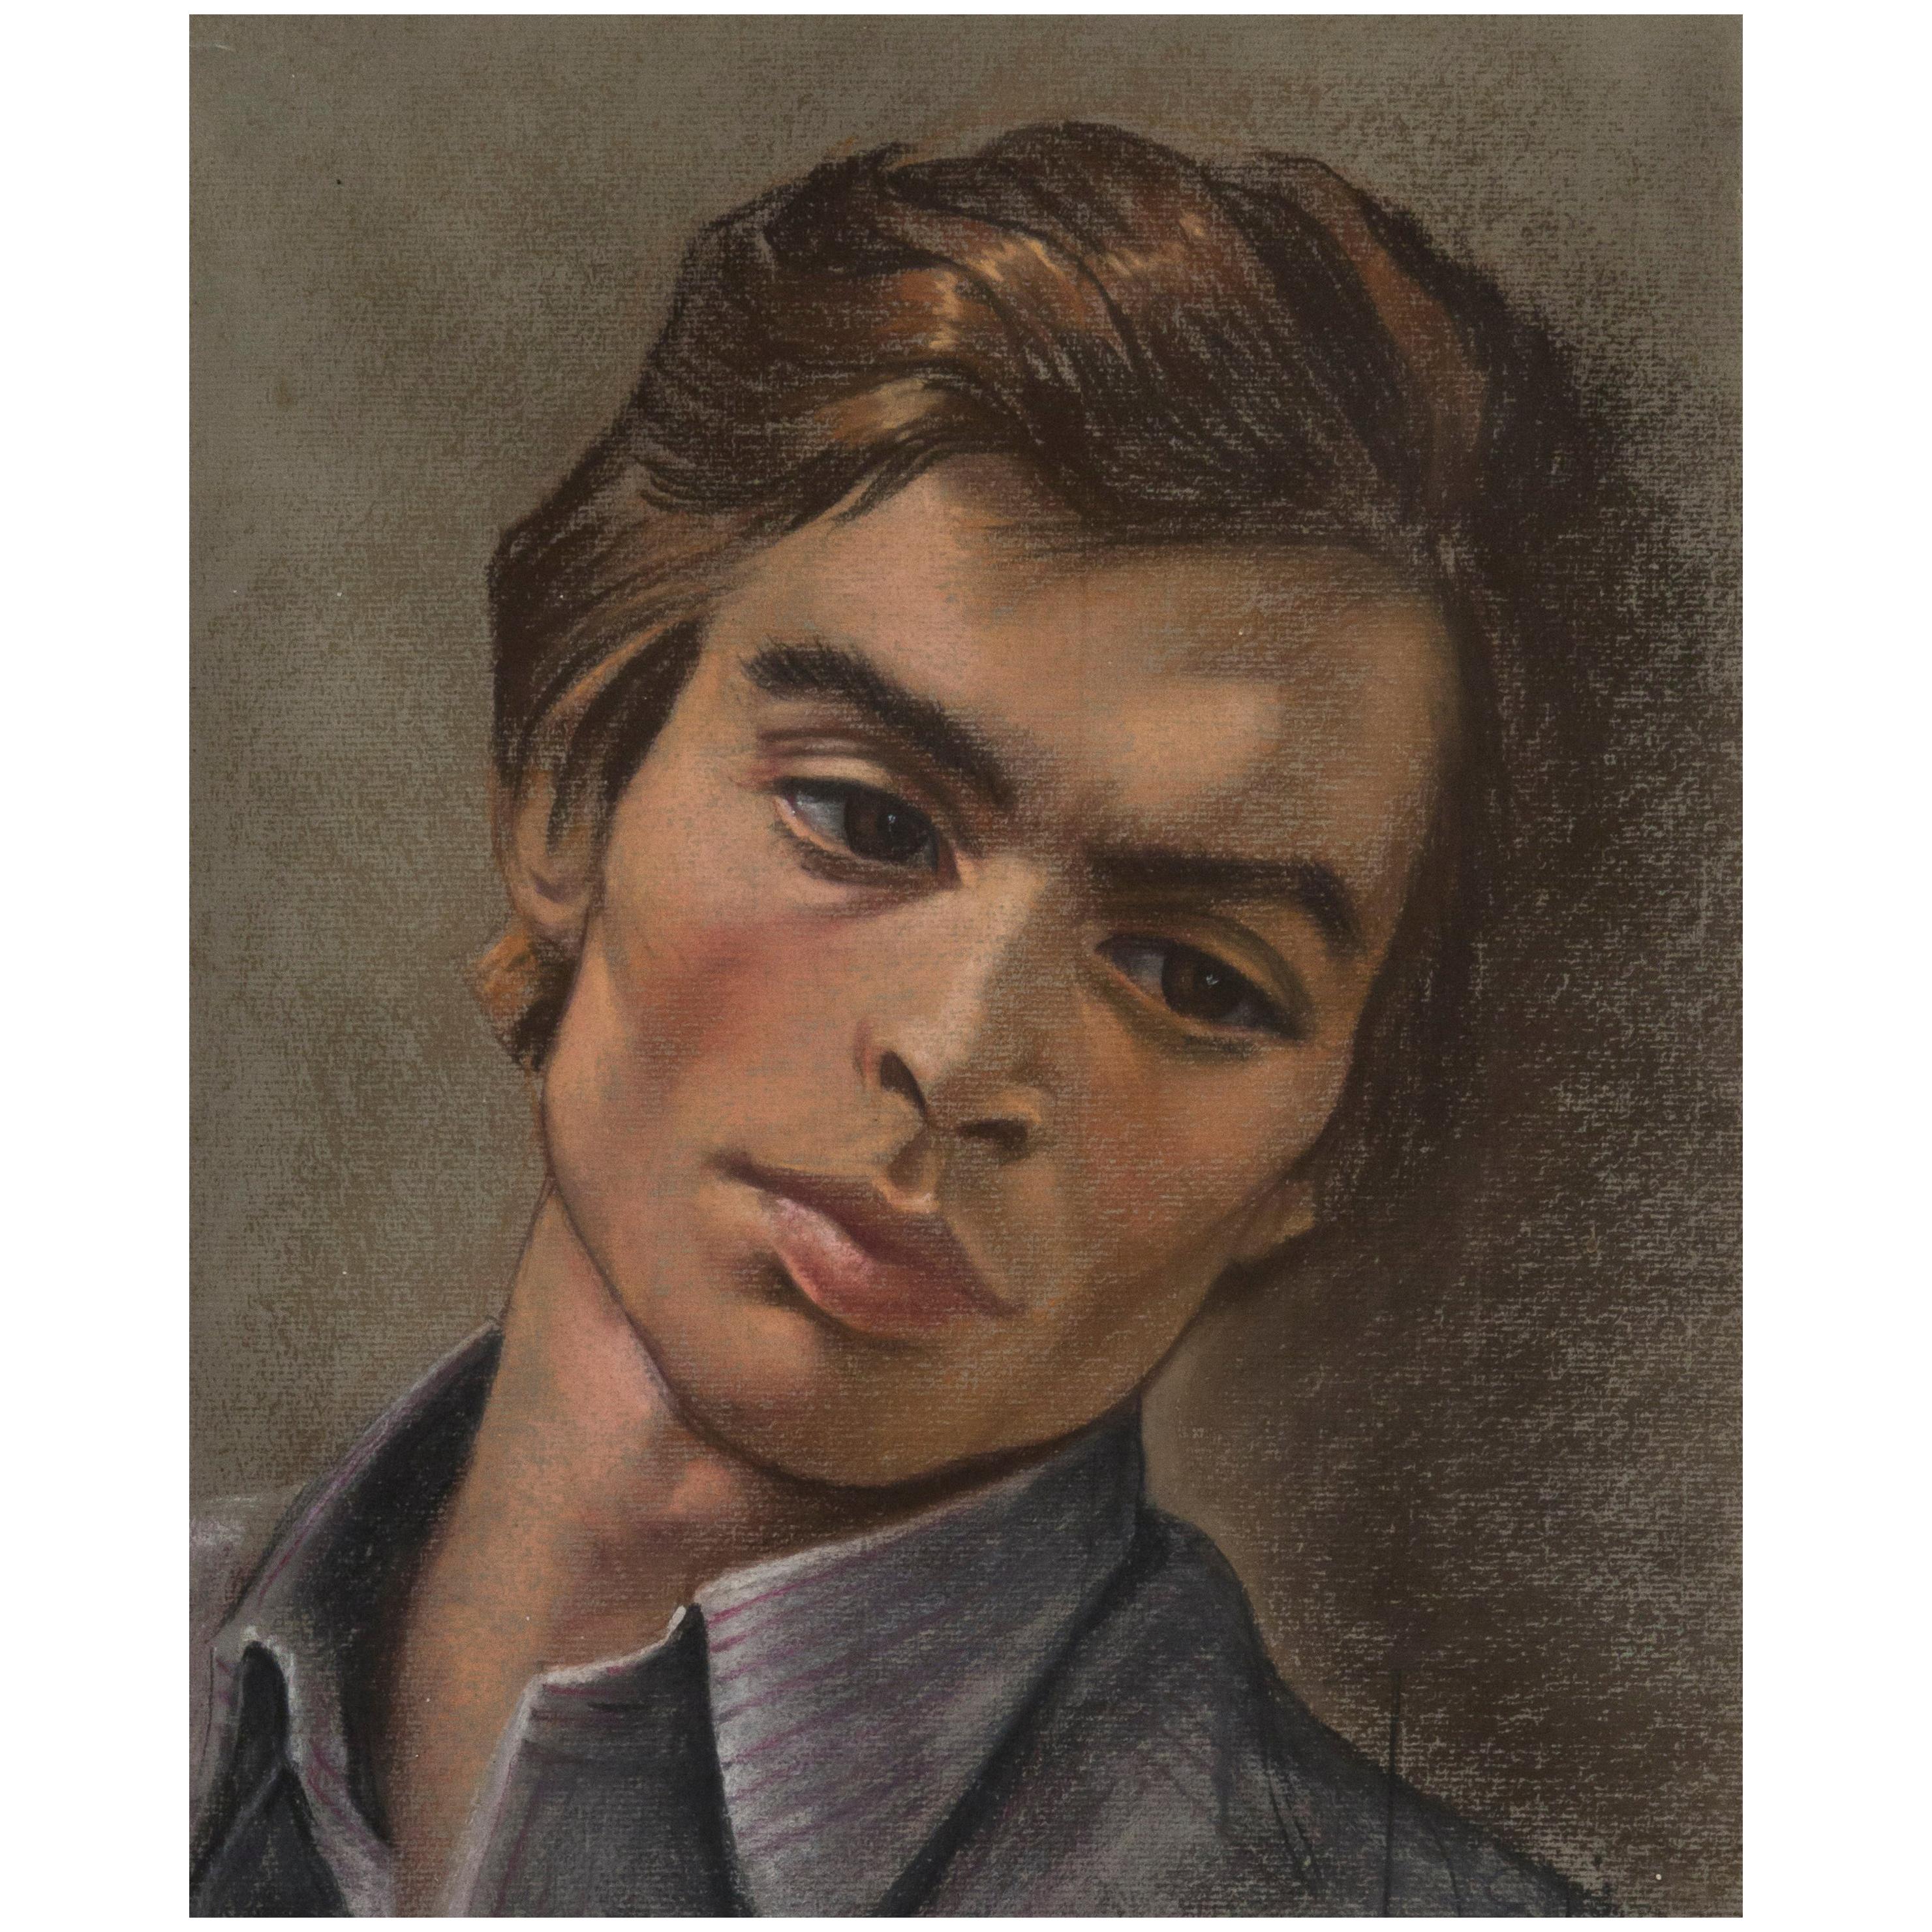 Rudolf Nureyev, Porträt von 1965